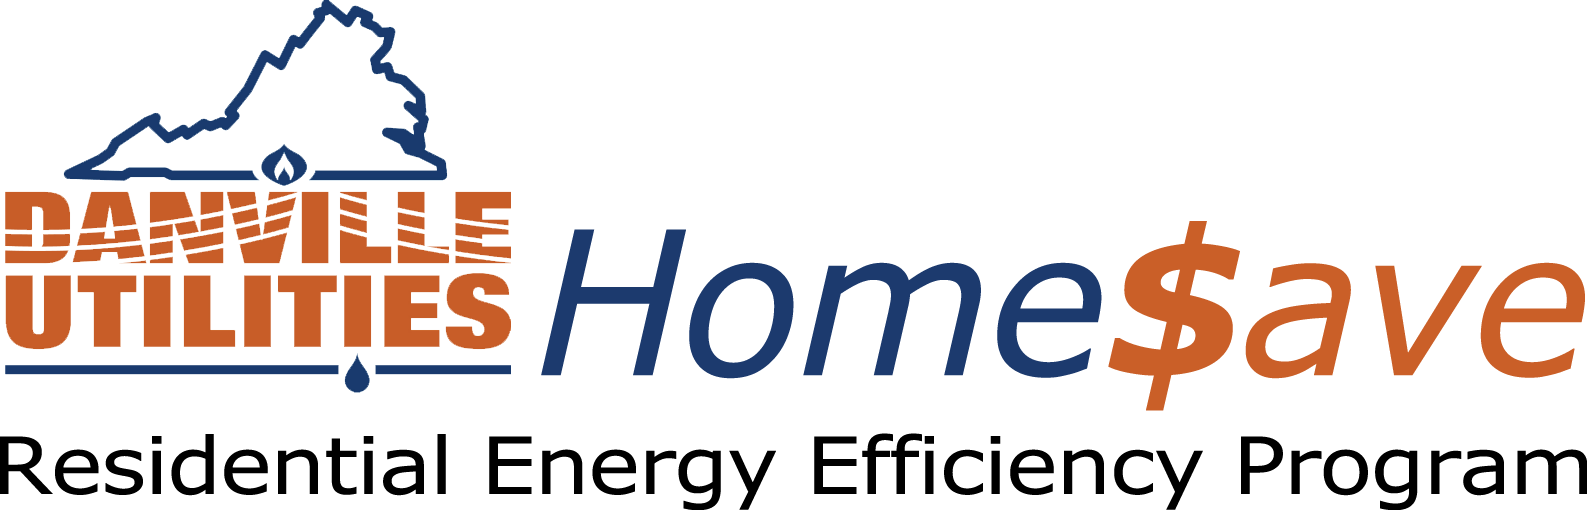 Rebate Logo - Residential Energy Efficiency Program | Danville Utilities